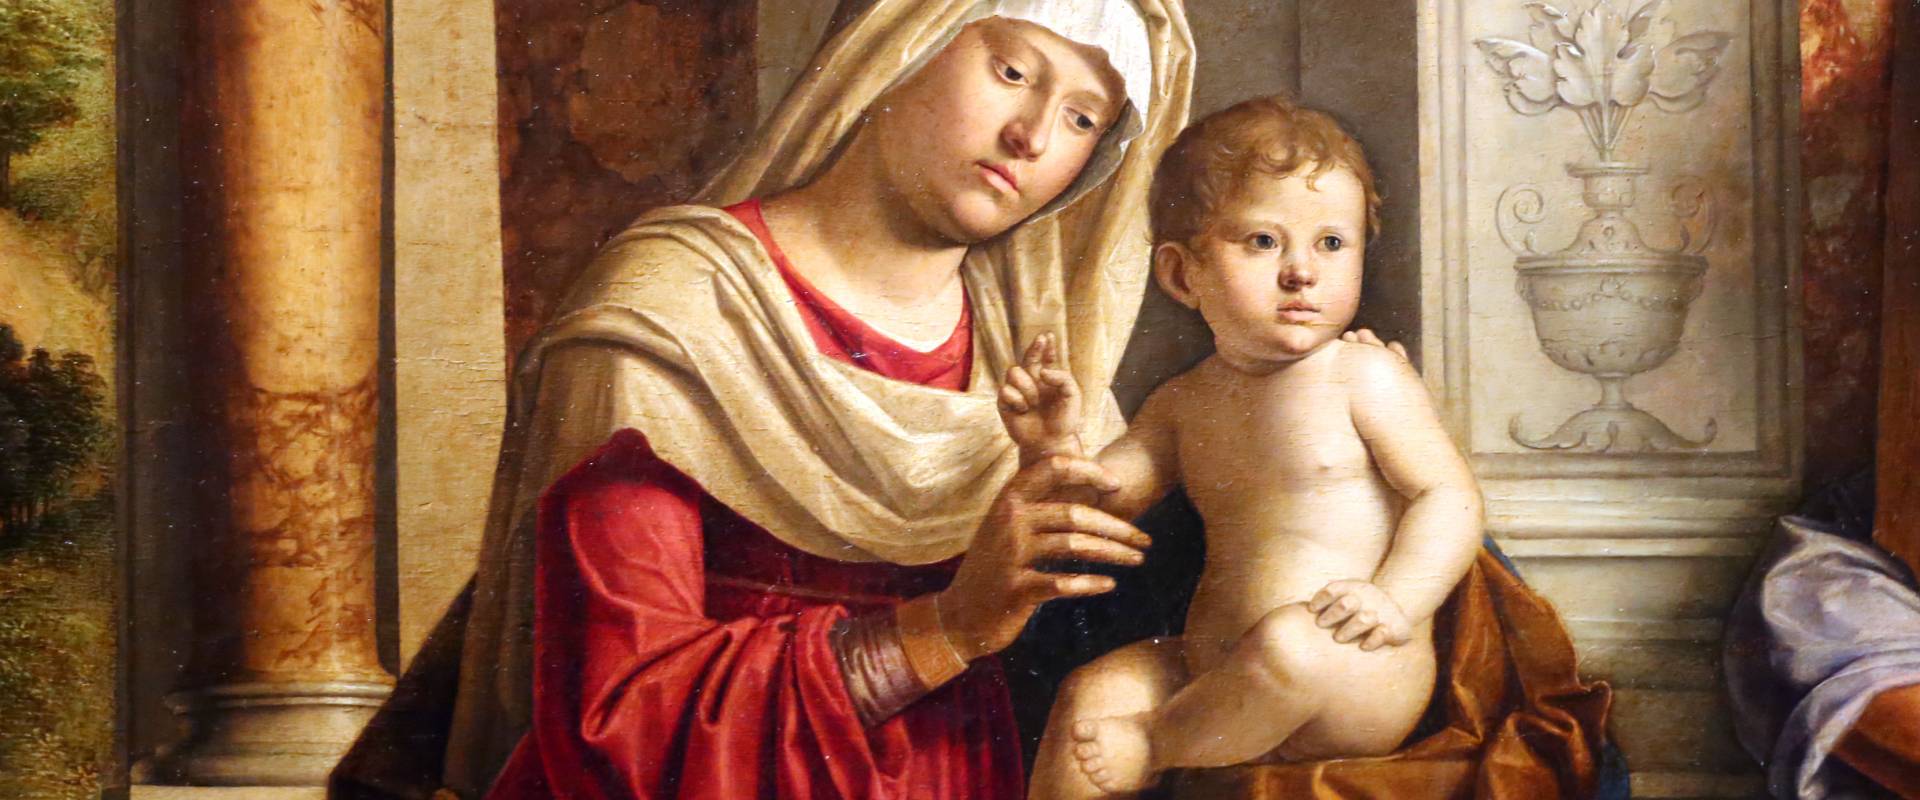 Cima da conegliano, madonna col bambino tra i ss. michele e andrea, 1498-1500, 03 photo by Sailko